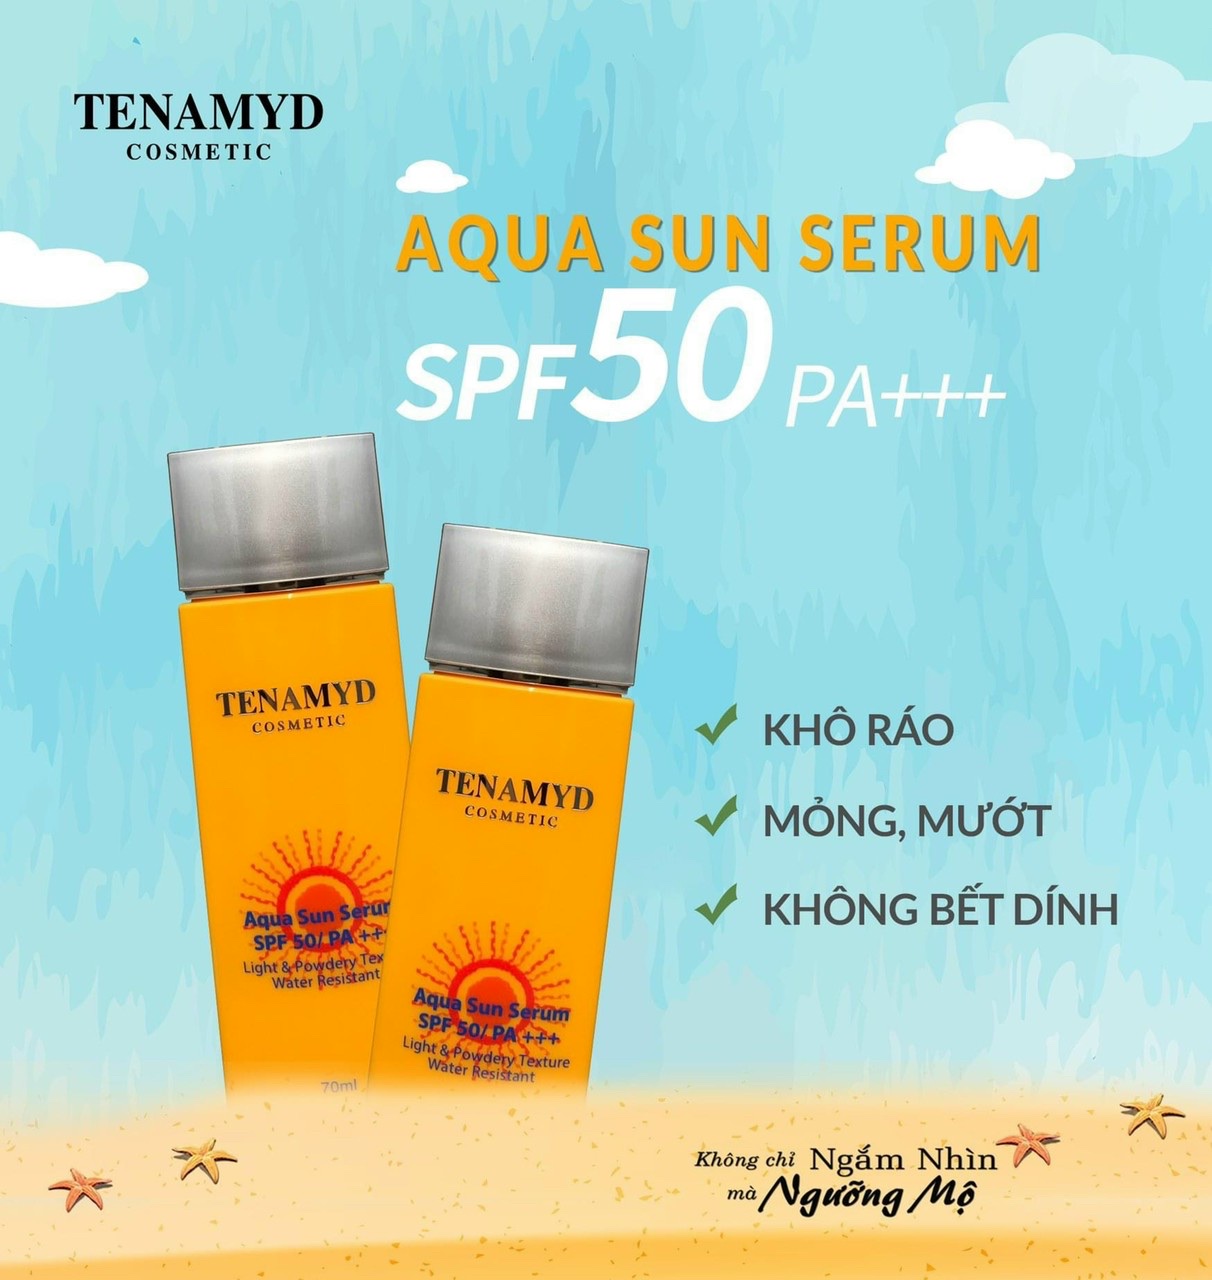 Tinh chất chống nắng Tenamyd Aqua Sun Serum SPF 50/PA+++ tuýp 70ml